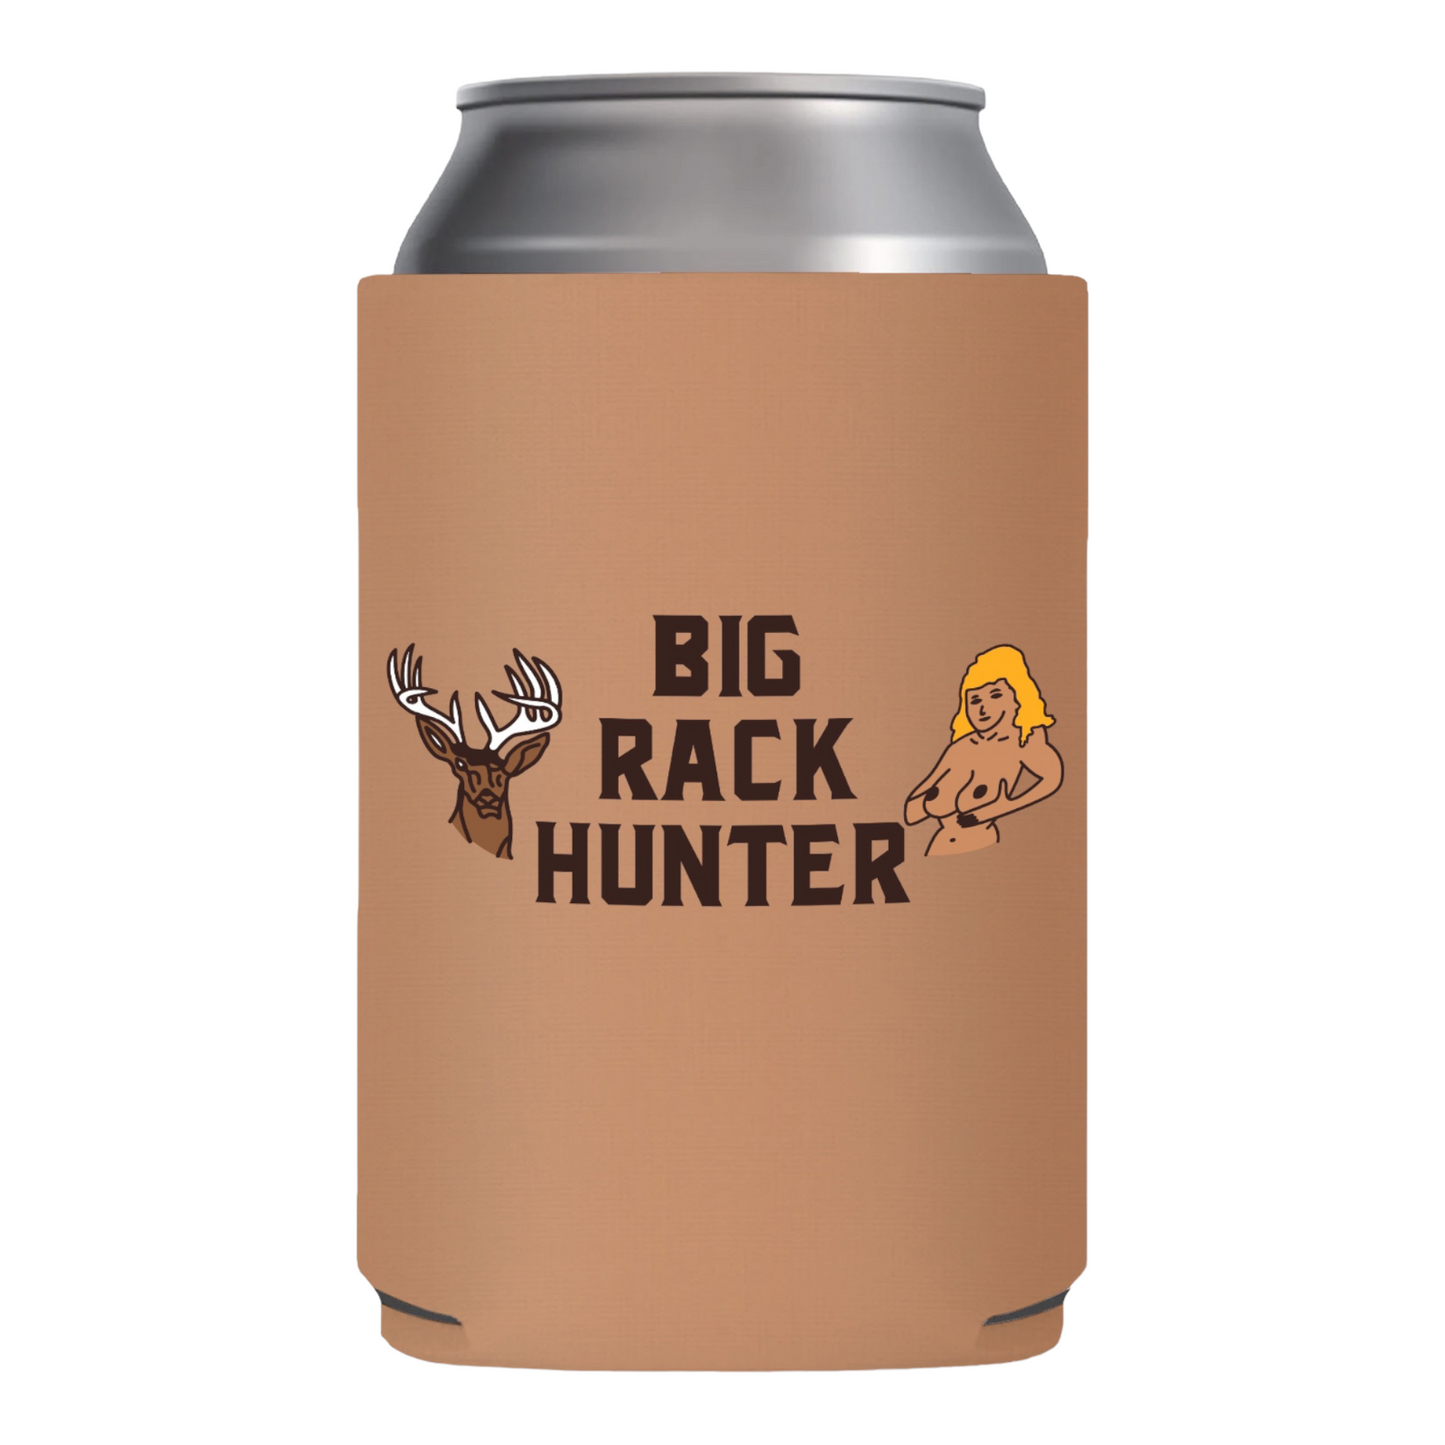 Big Rack Hunter Beer Funny Beer Can Cooler Holder Sleeve